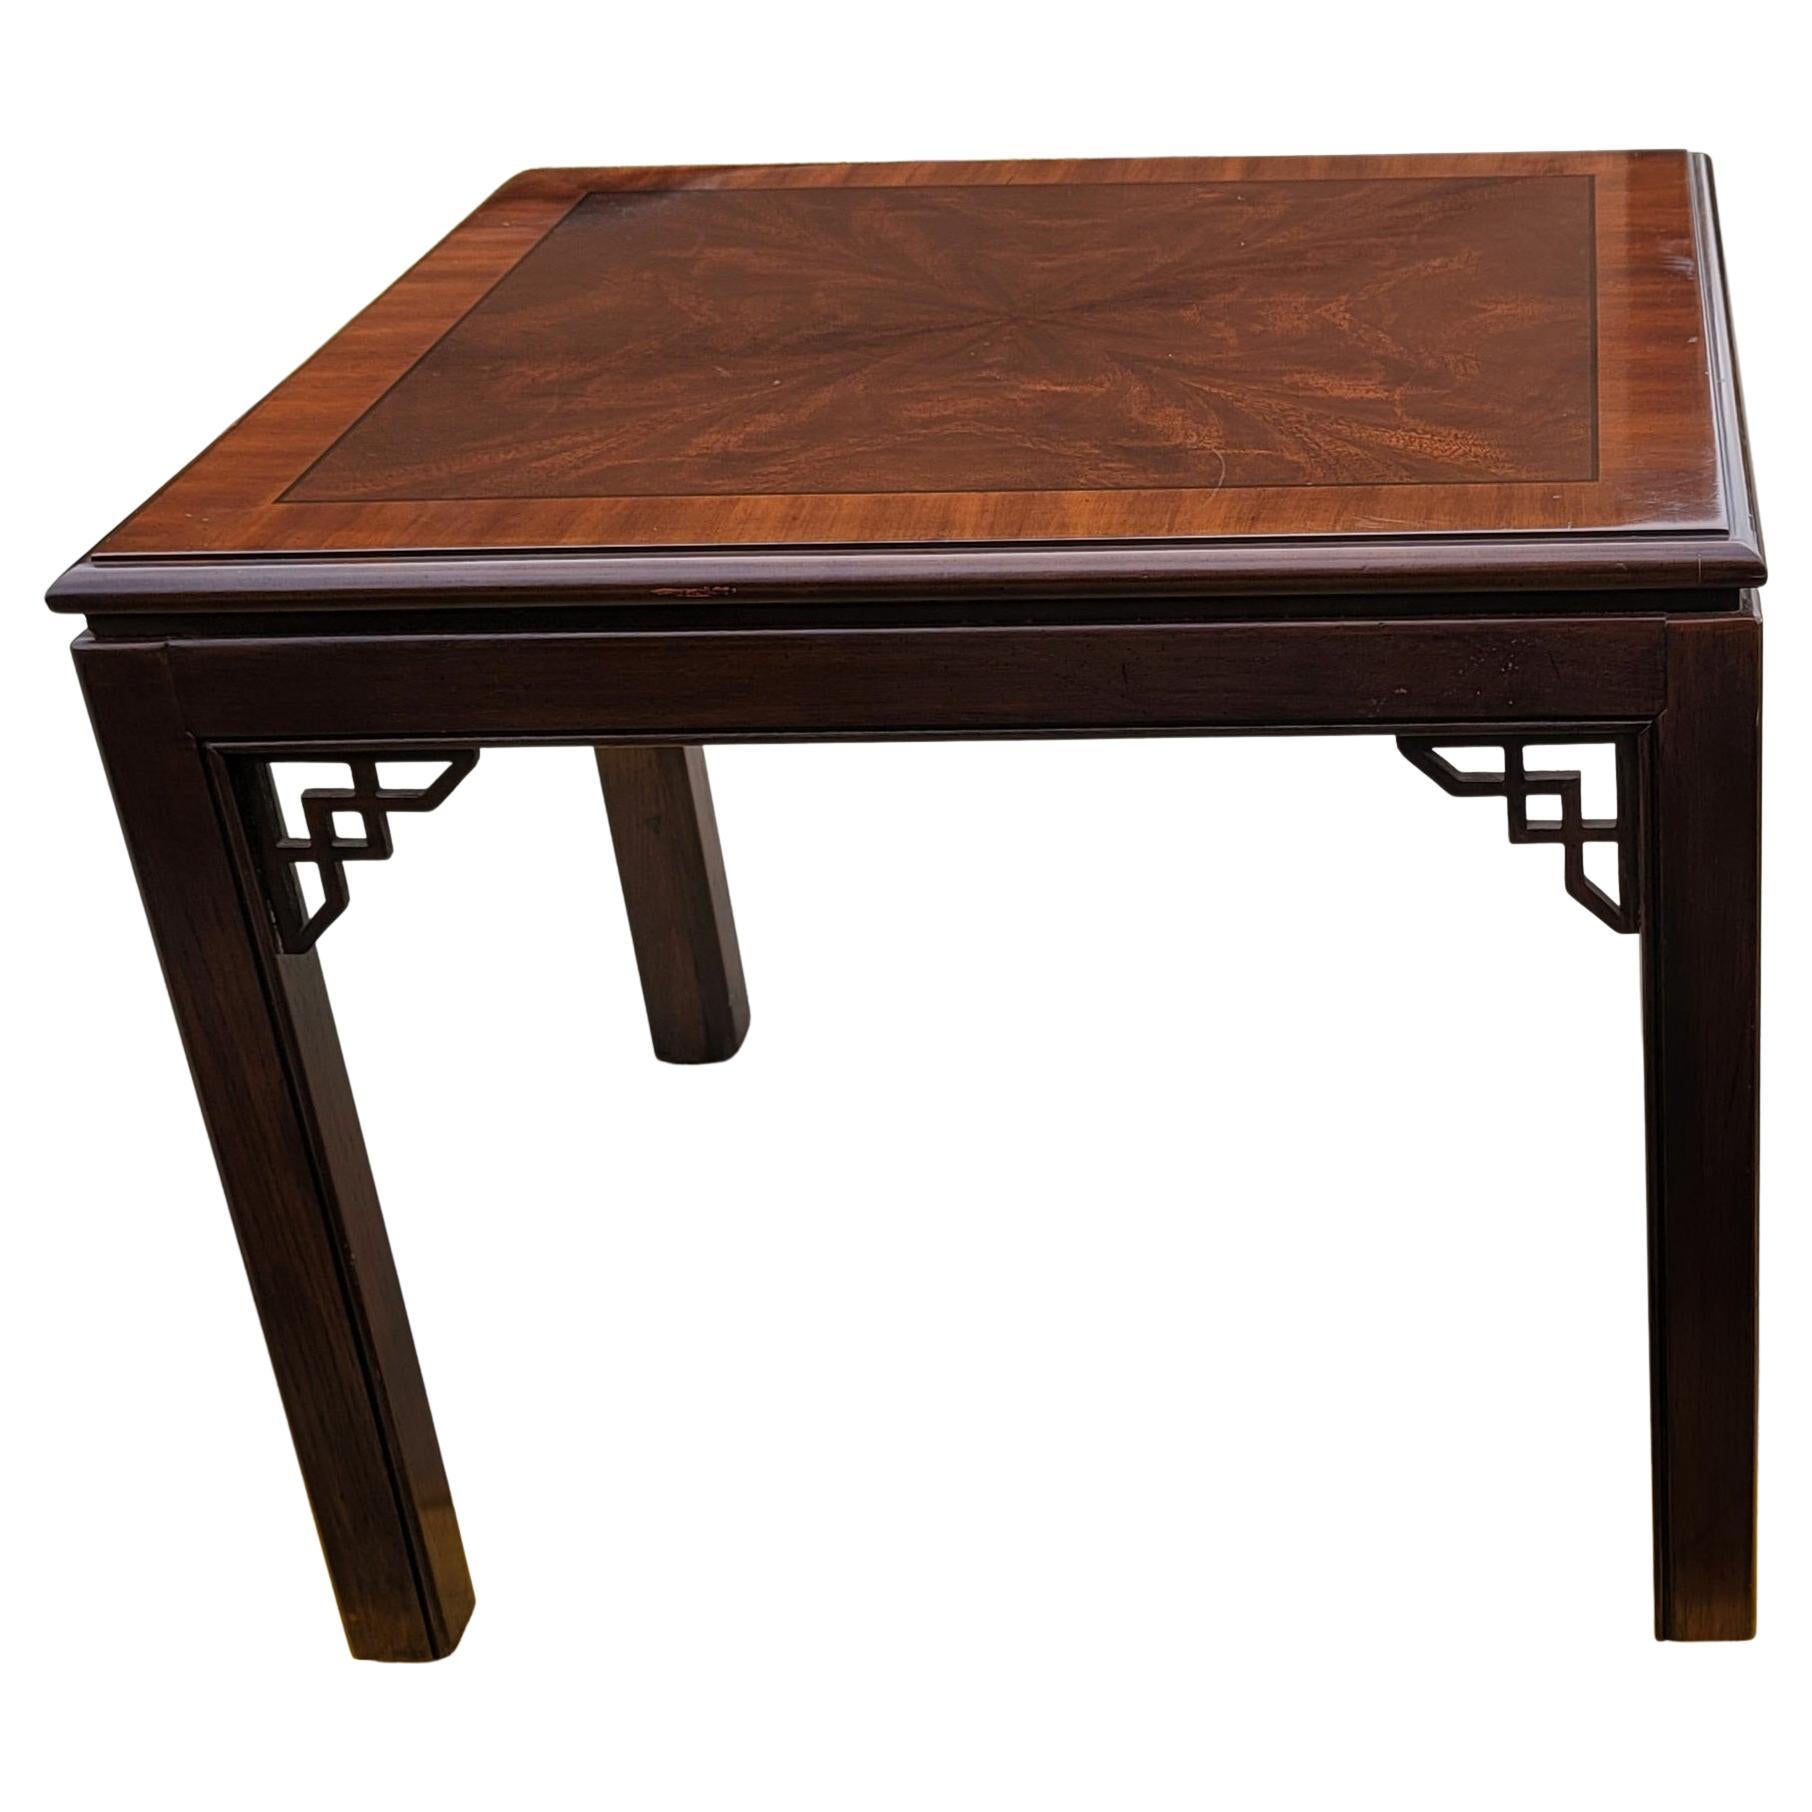 Table d'appoint en acajou brossé de la collection Chippendale de Drexel Furniture